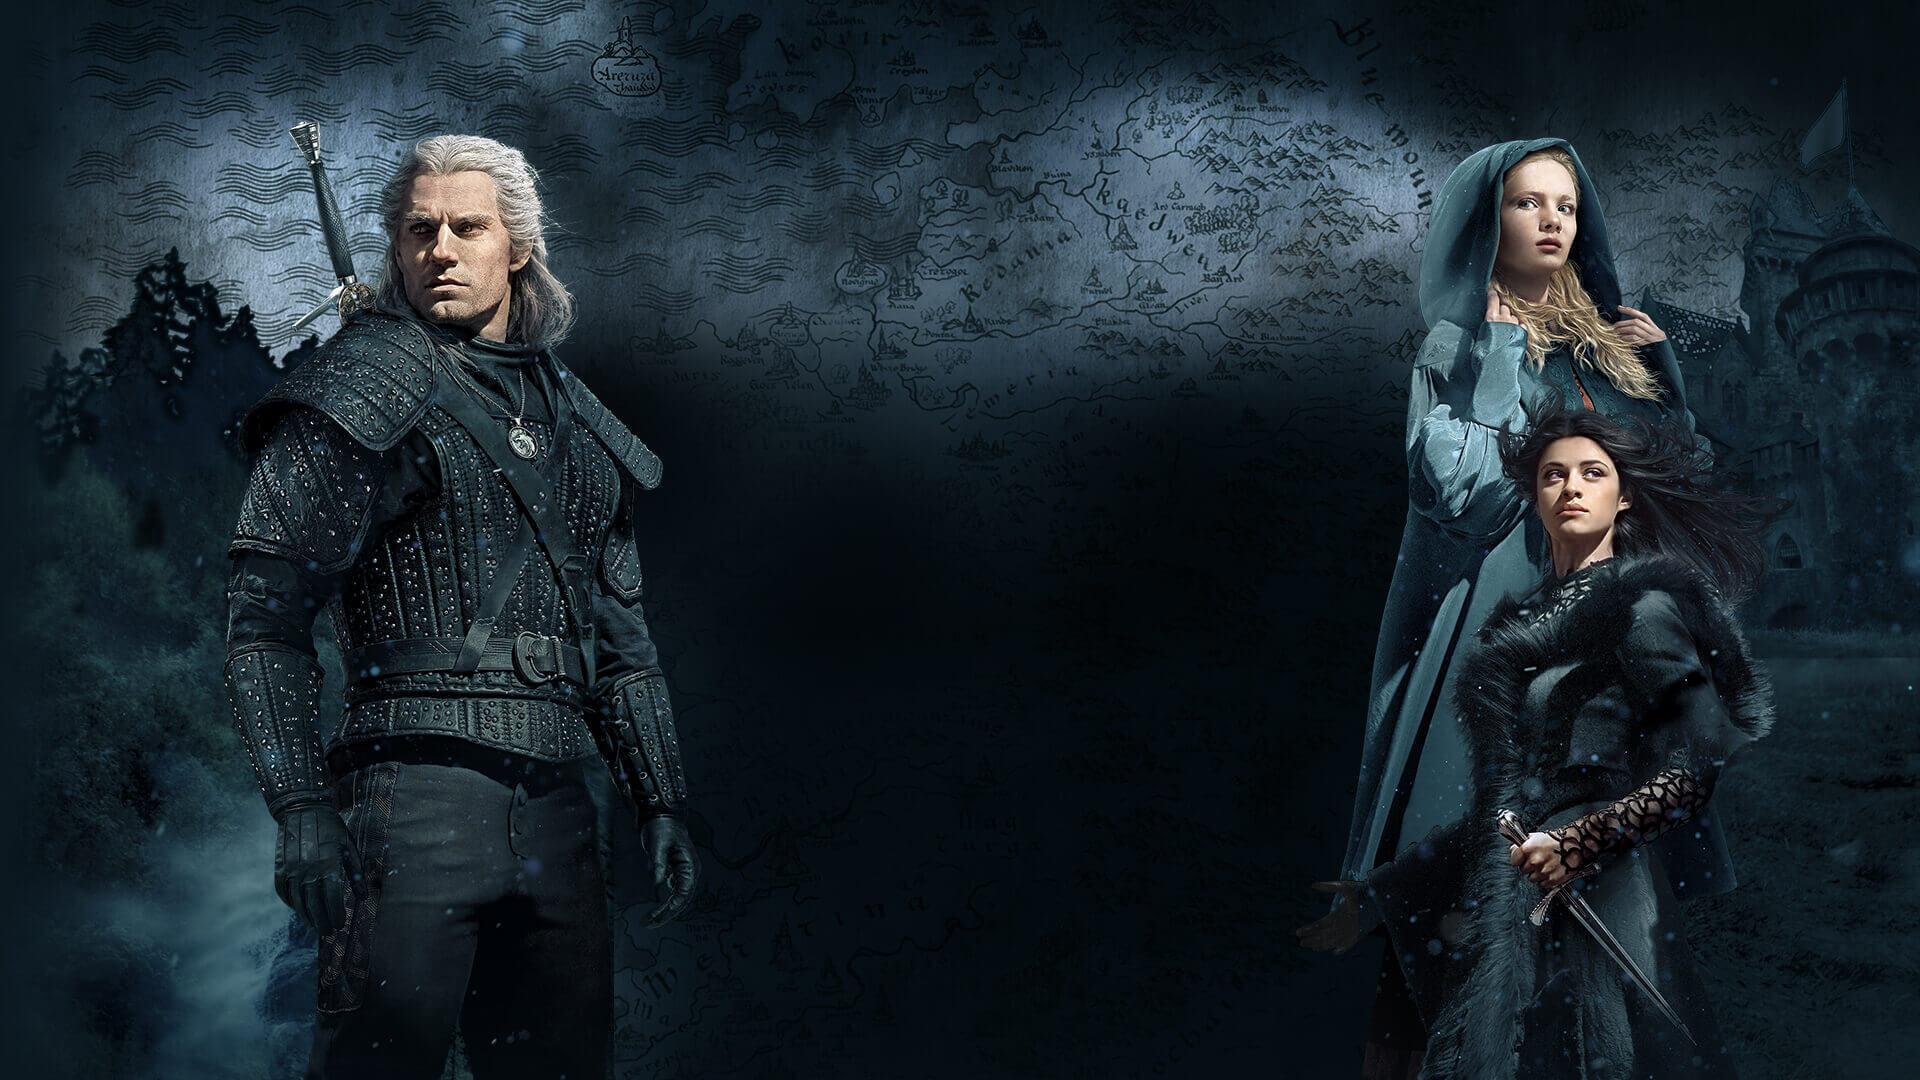 Henry Cavill as Geralt Witcher Wallpaper, HD TV Series 4K